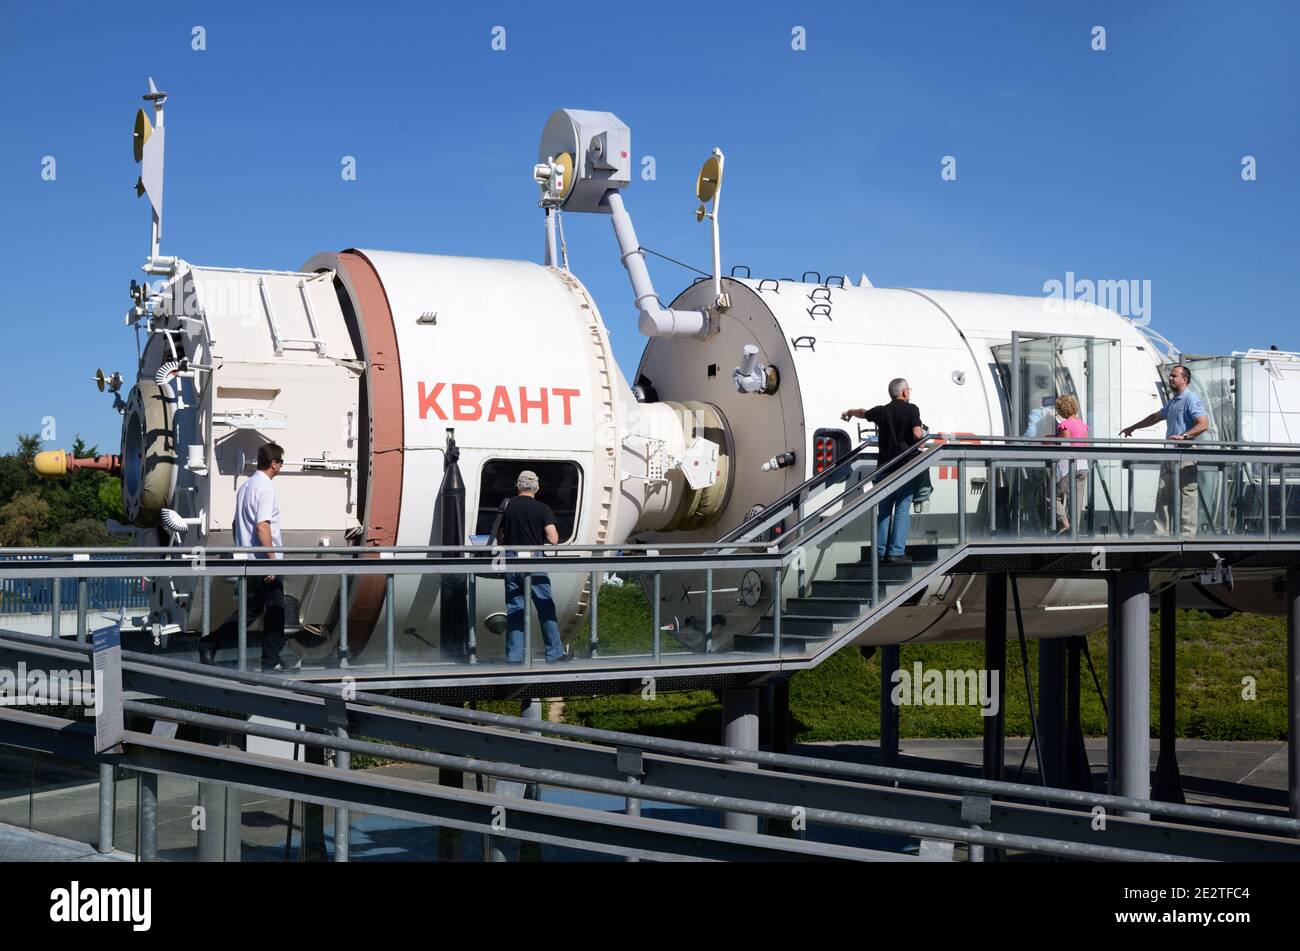 Les touristes visitent la Station spatiale russe soviétique MIR modèle pleine grandeur Reproduction à la Cité de l'espace ou au parc à thème SpaceFlight Toulouse France Banque D'Images